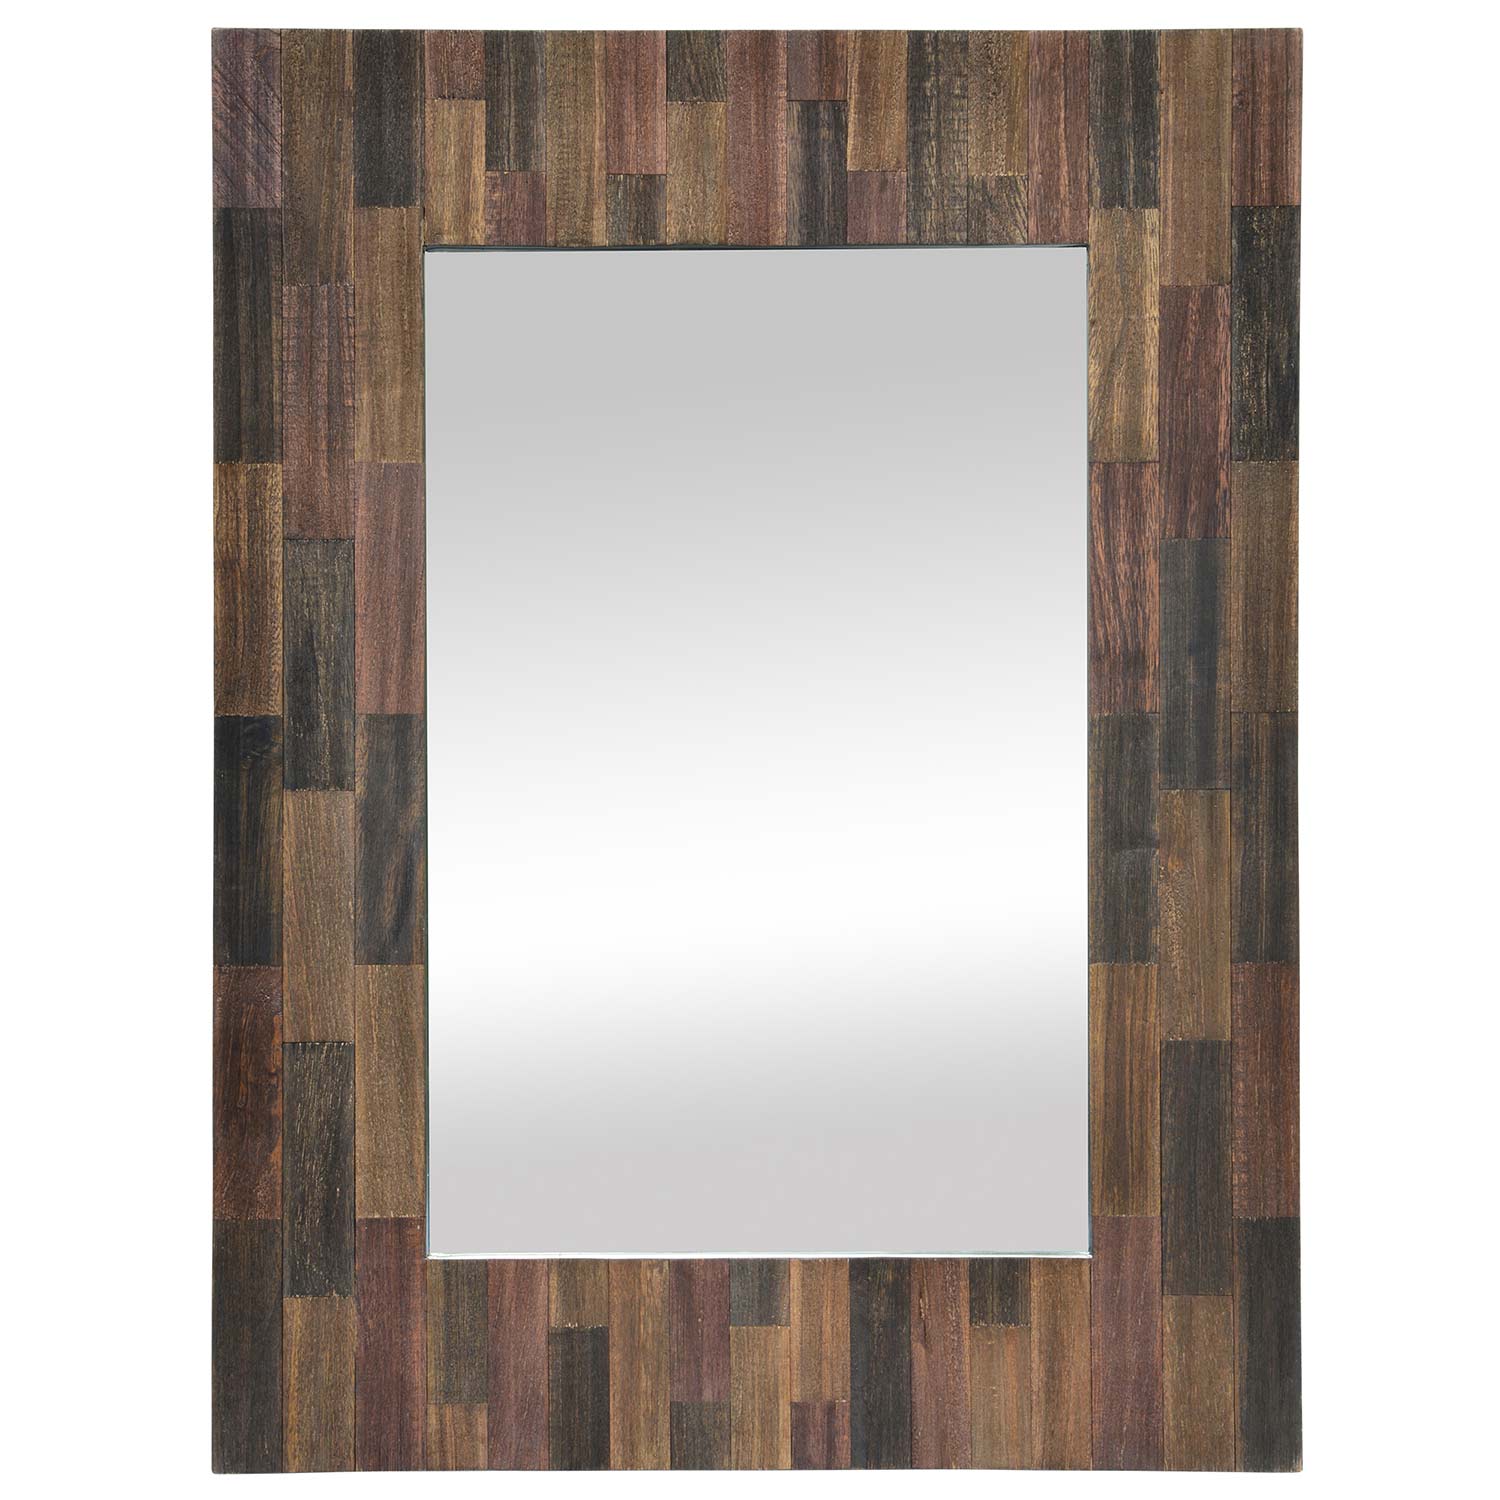 Ren-Wil Craftsman Mirror - Natural Wood